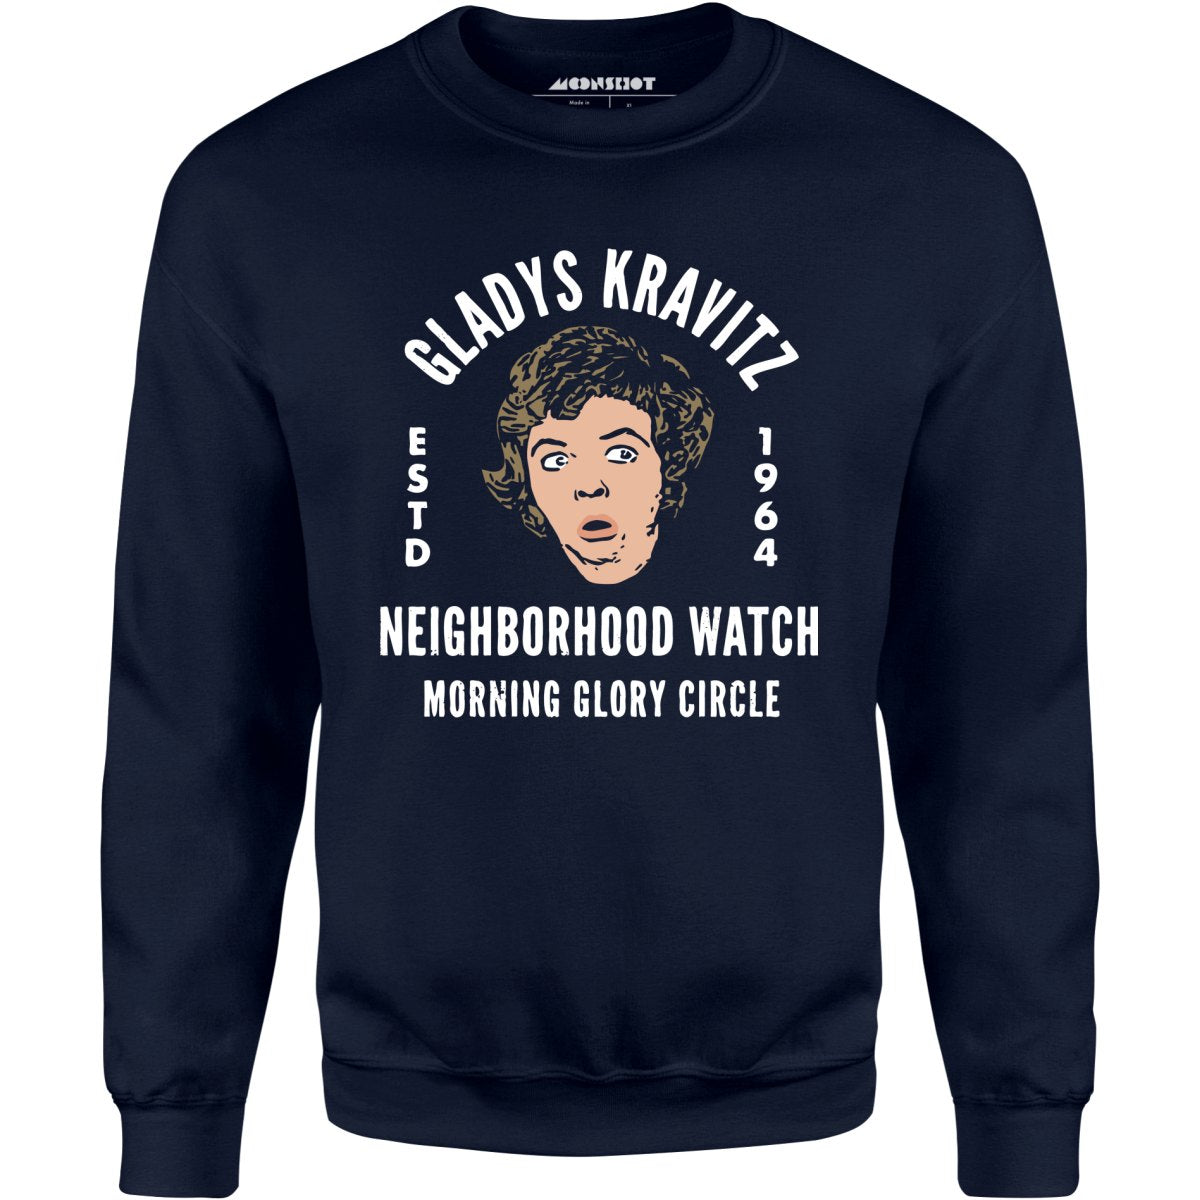 Gladys Kravitz Neighborhood Watch - Unisex Sweatshirt